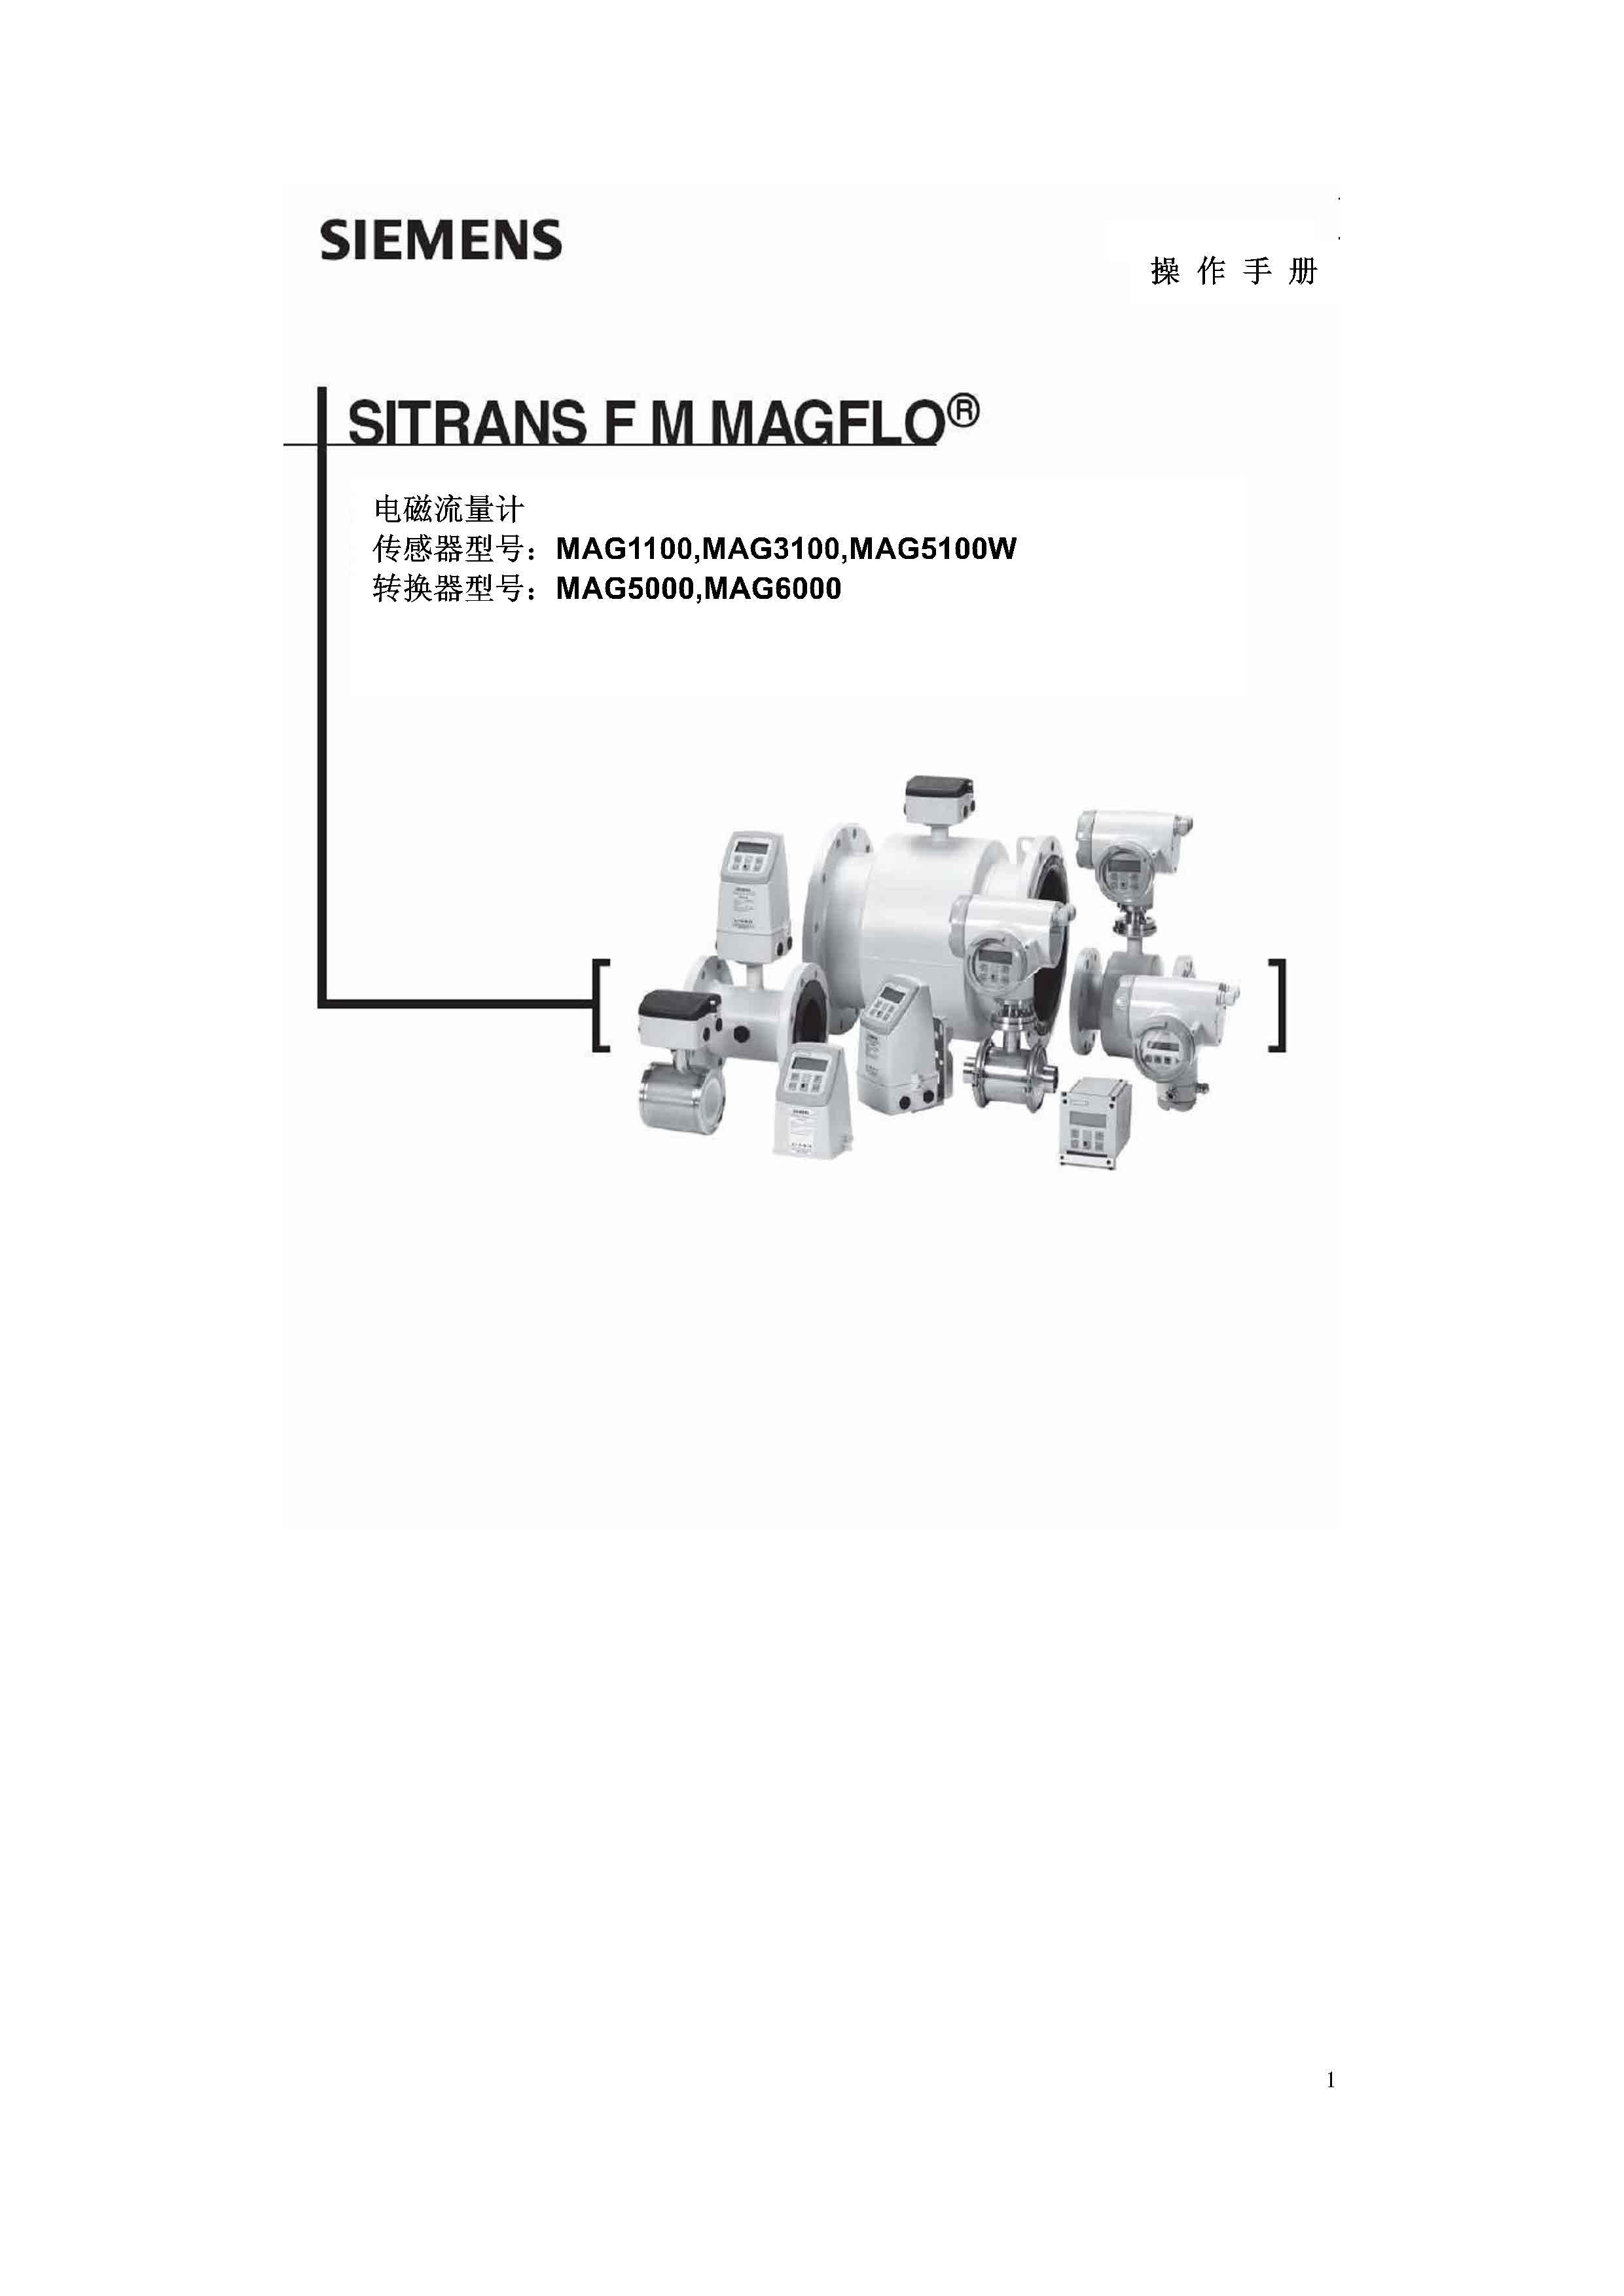 Siemens_西门子电磁流量计 MAG5000